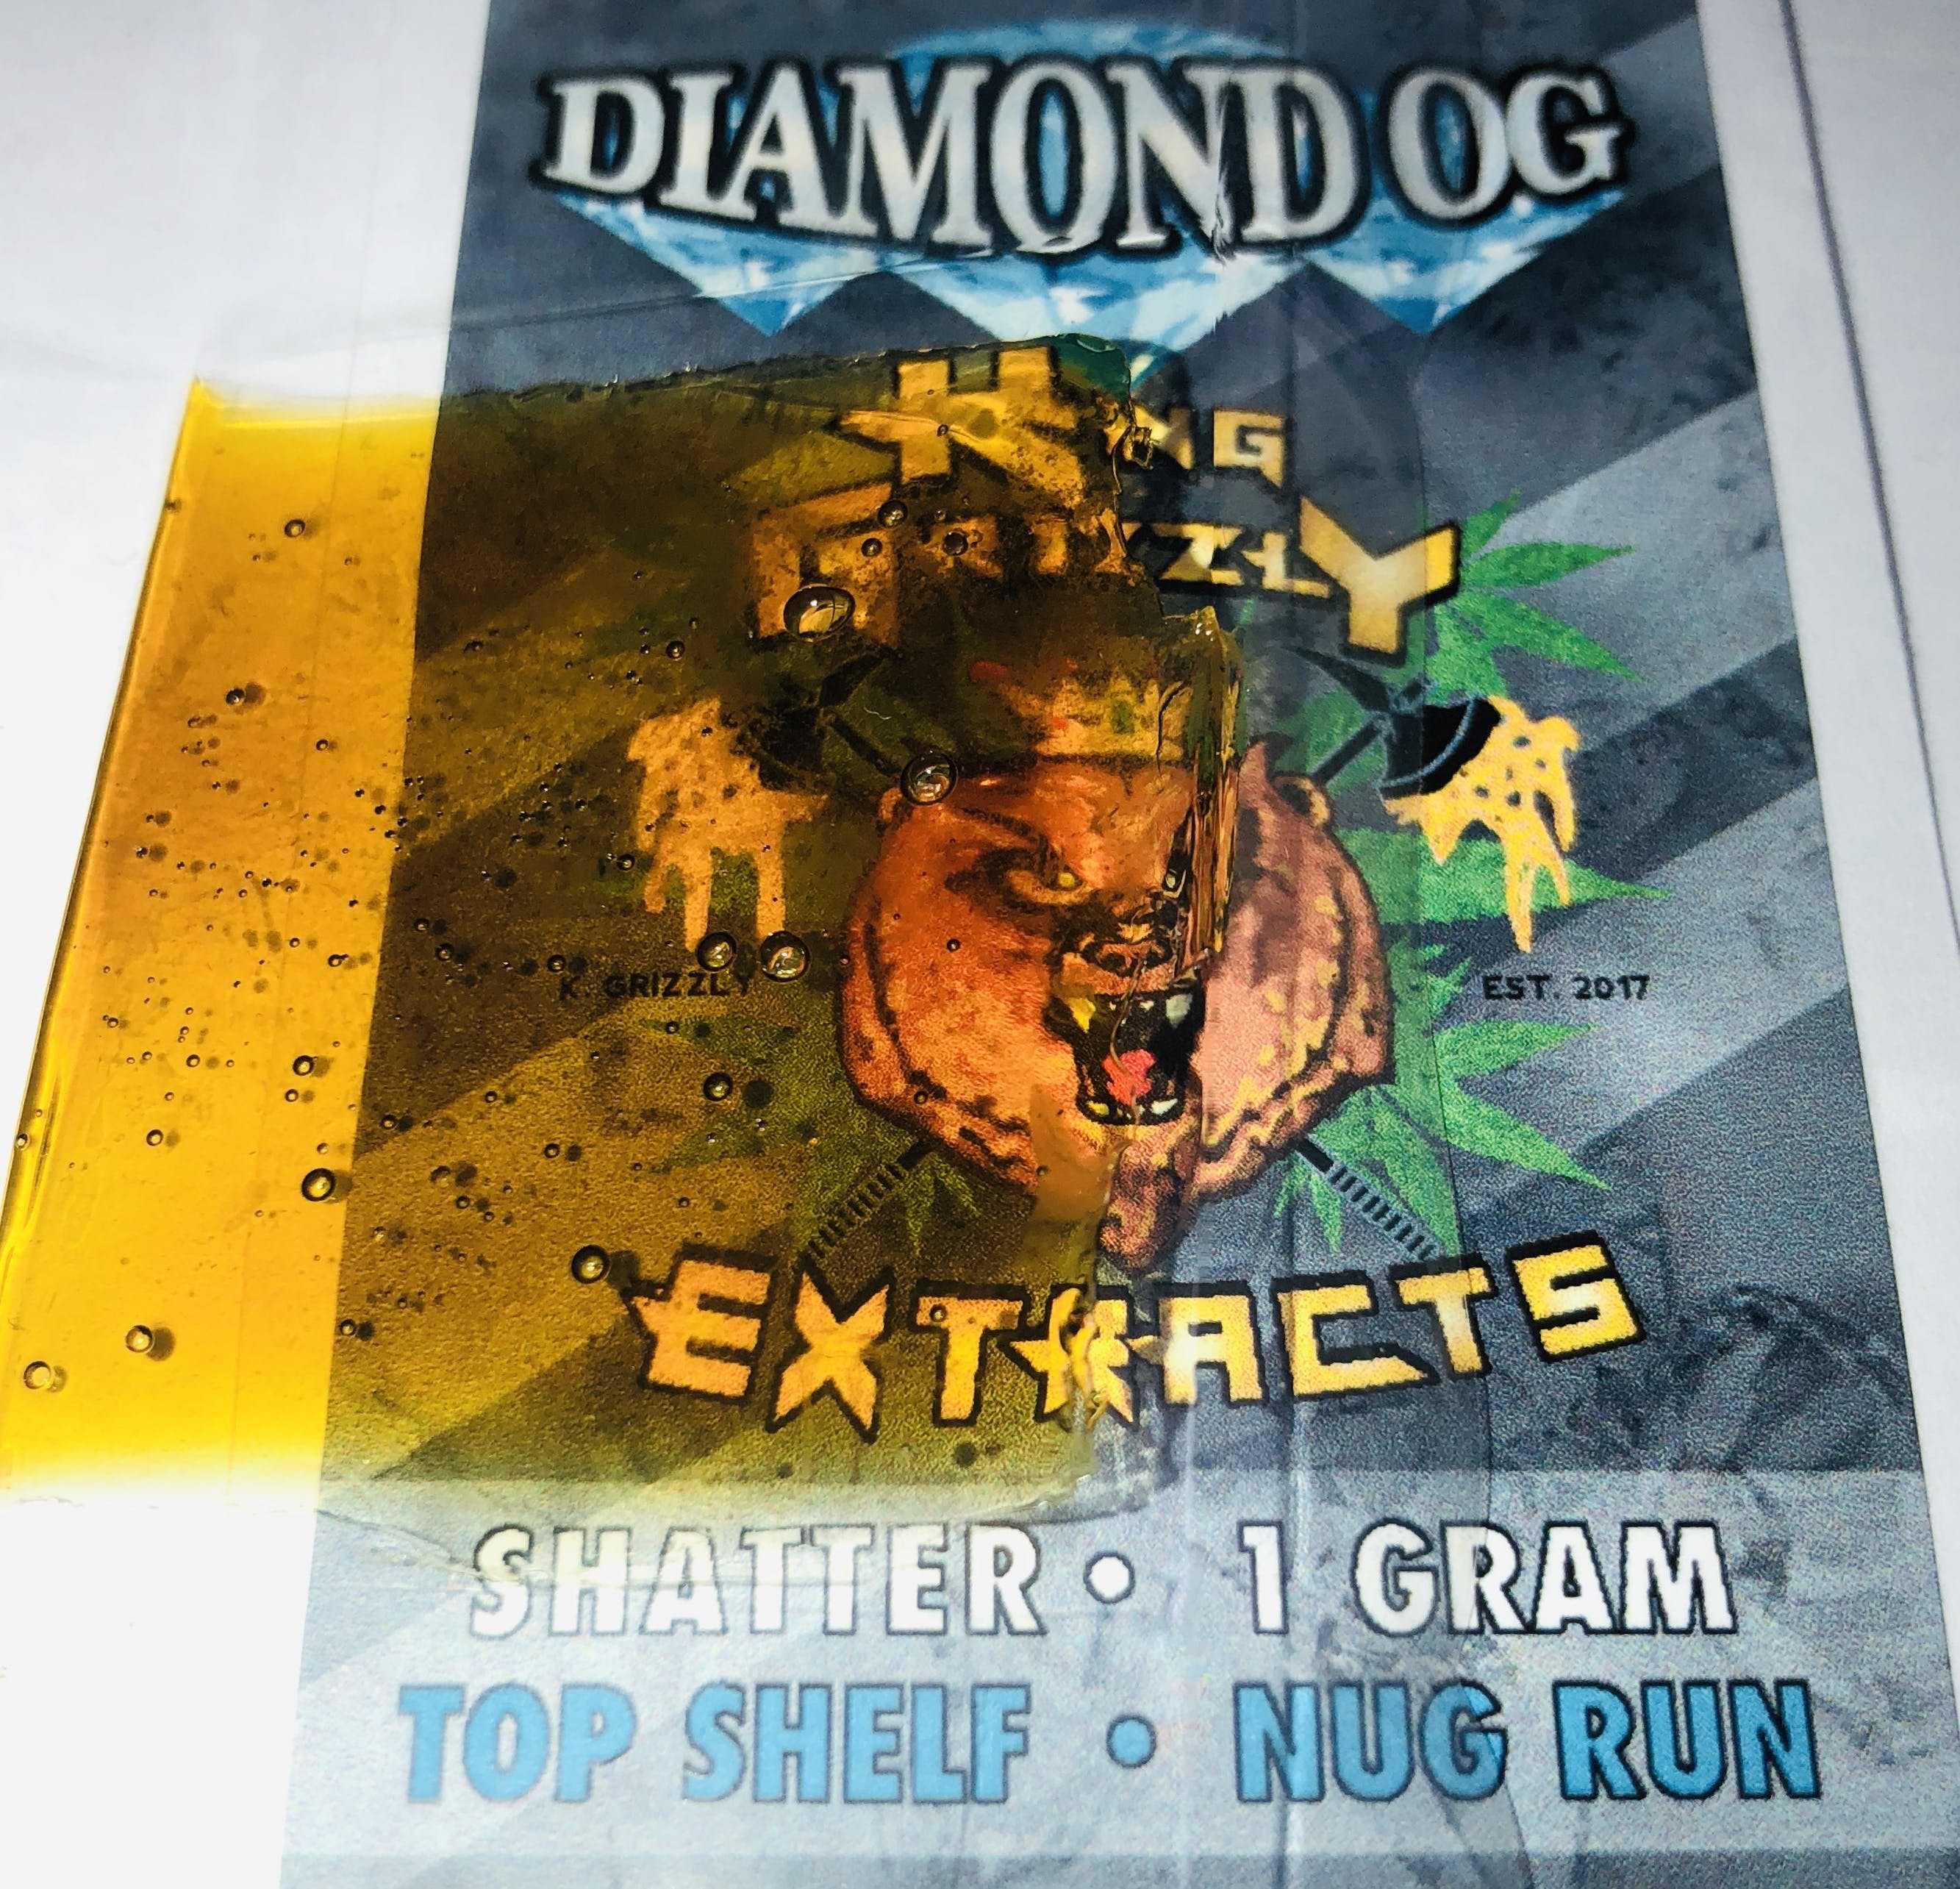 DIAMOND OG - NUG RUN SHATTER